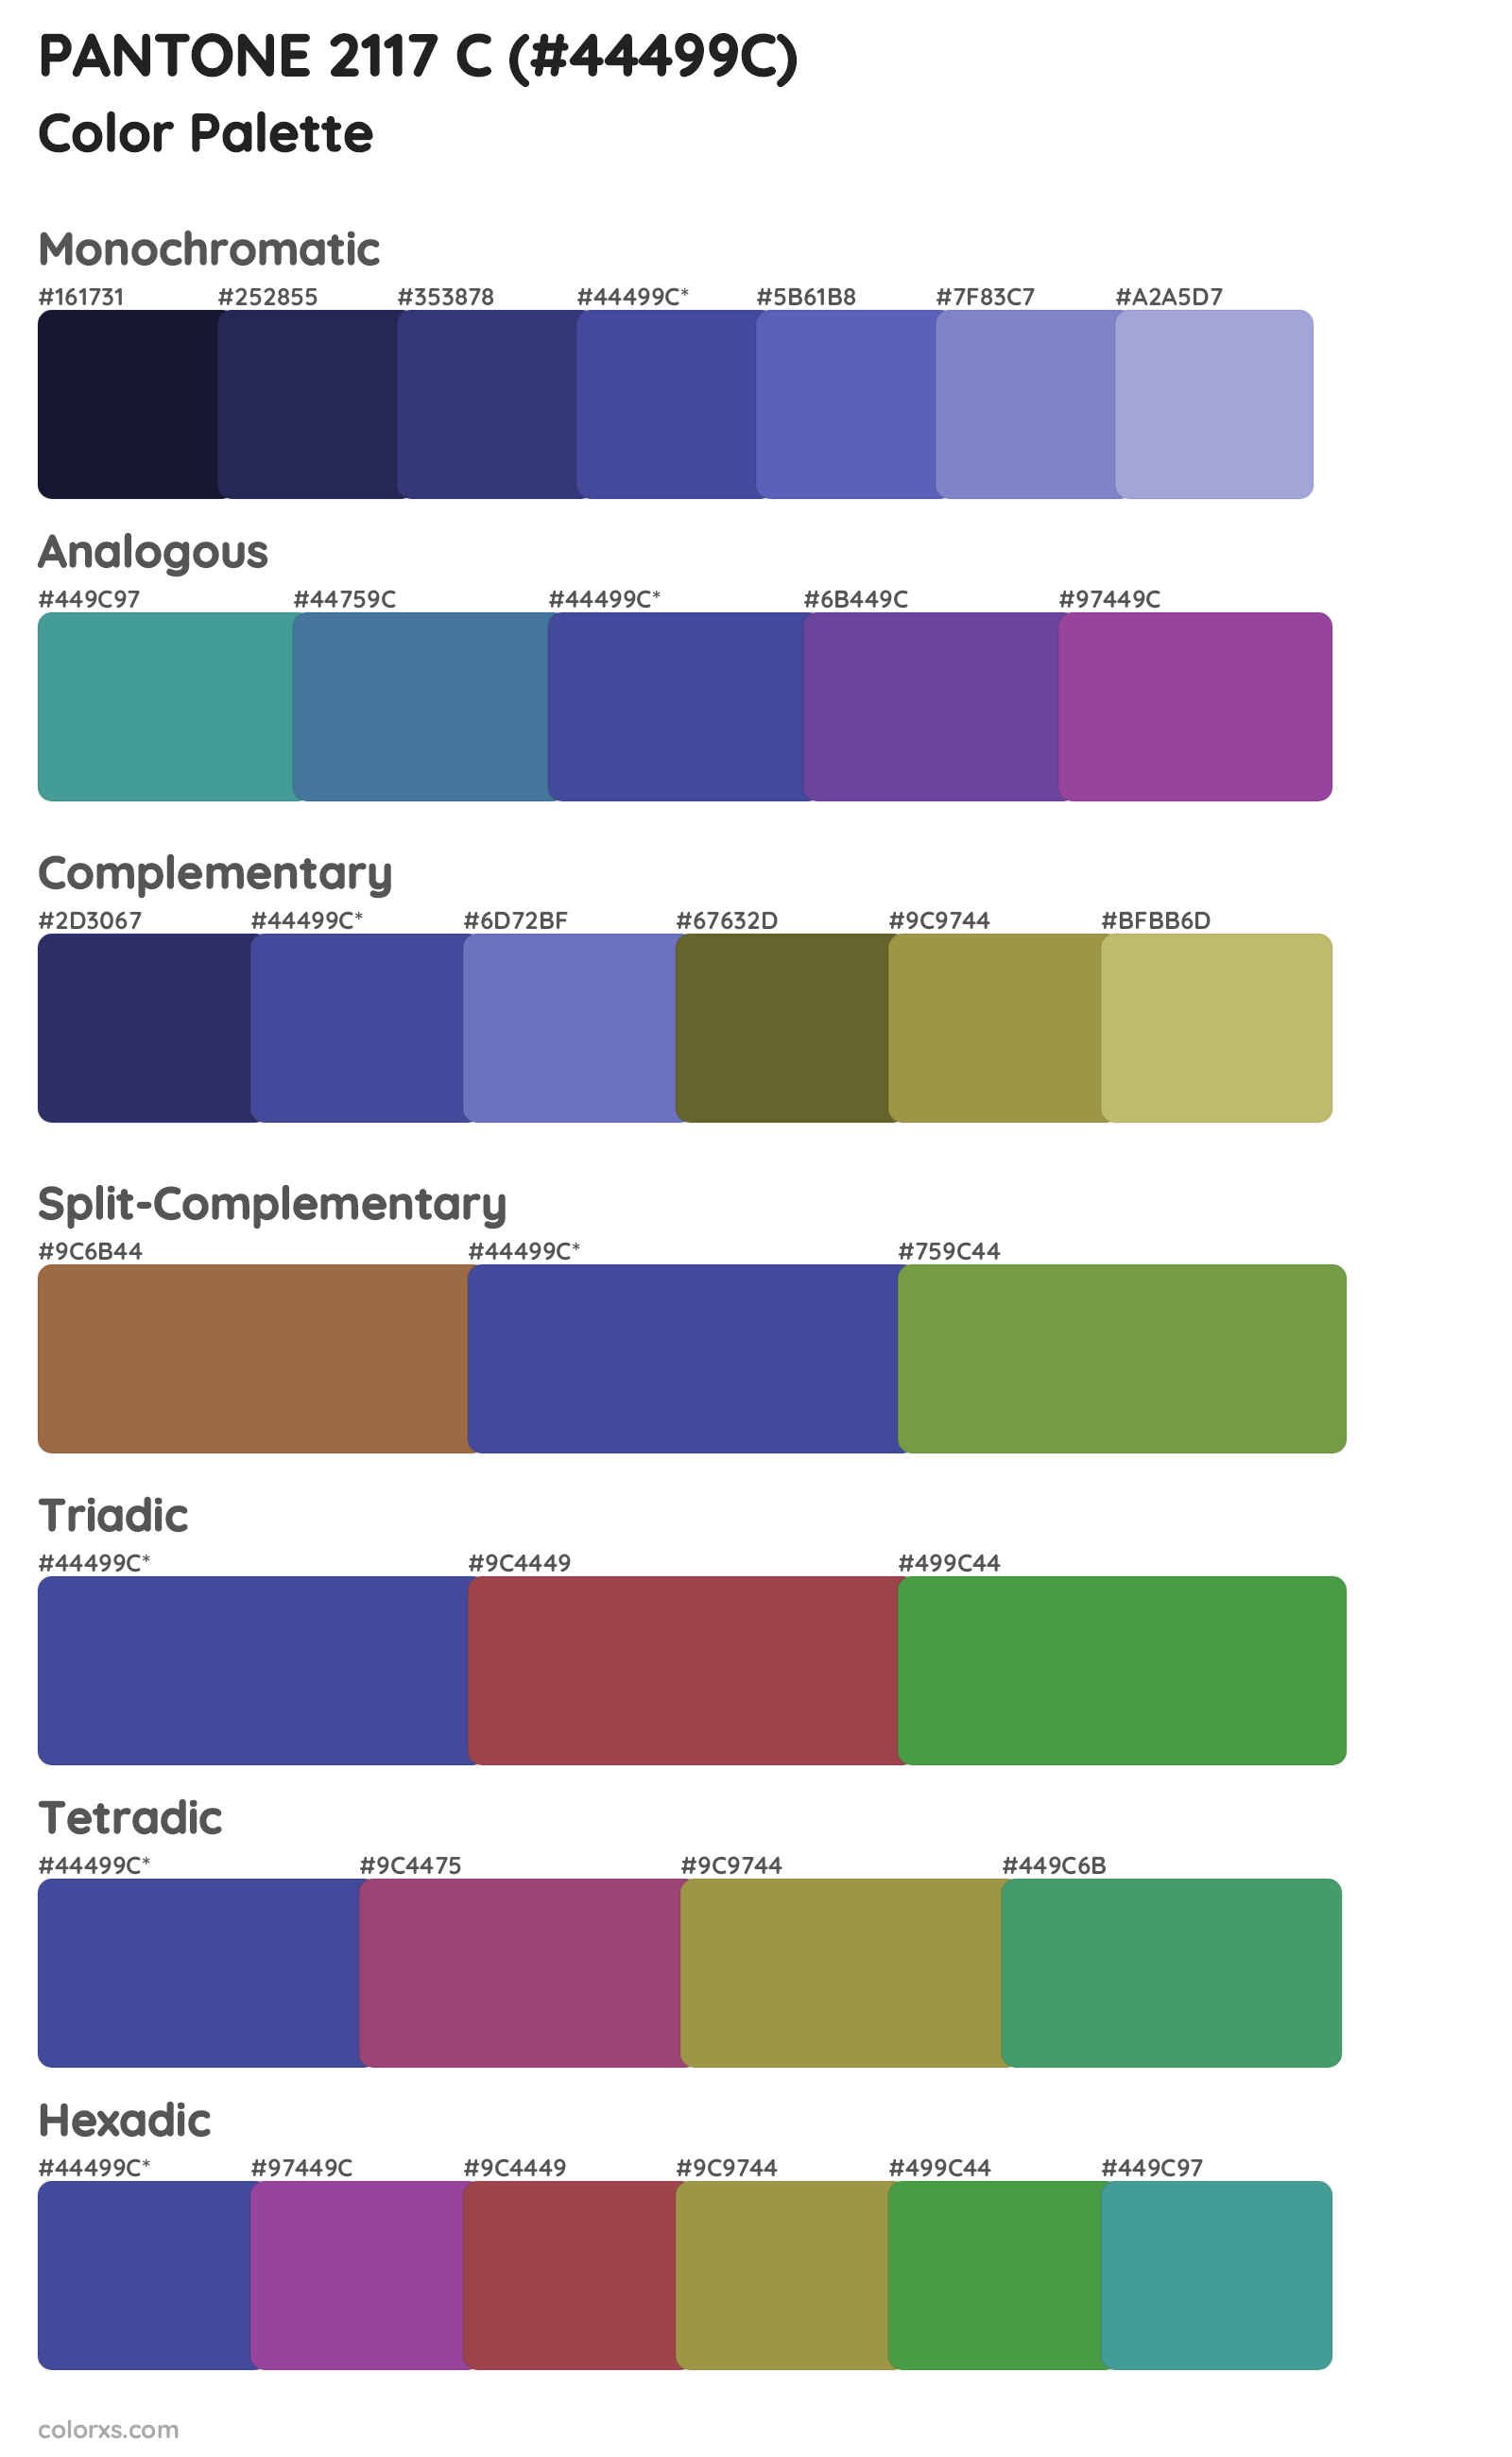 PANTONE 2117 C Color Scheme Palettes